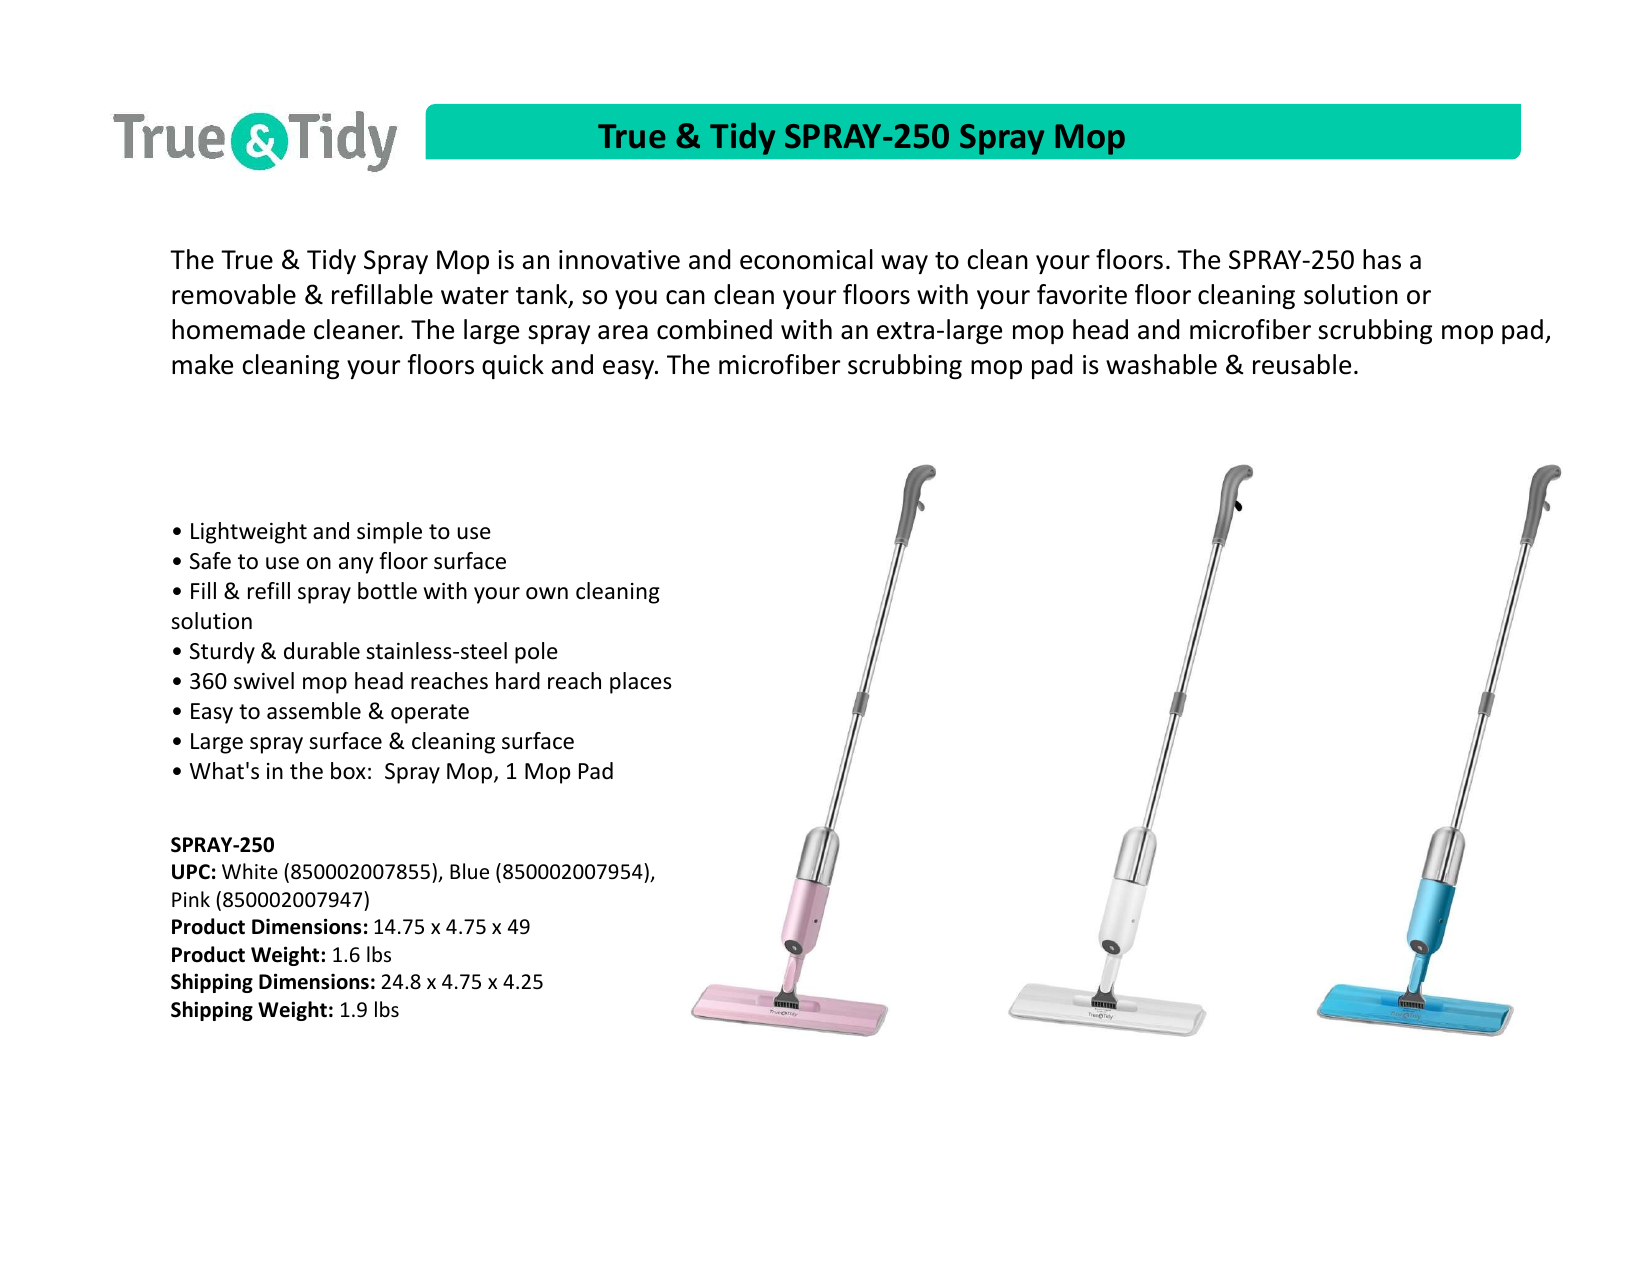 True & Tidy Spray Mop, Blue